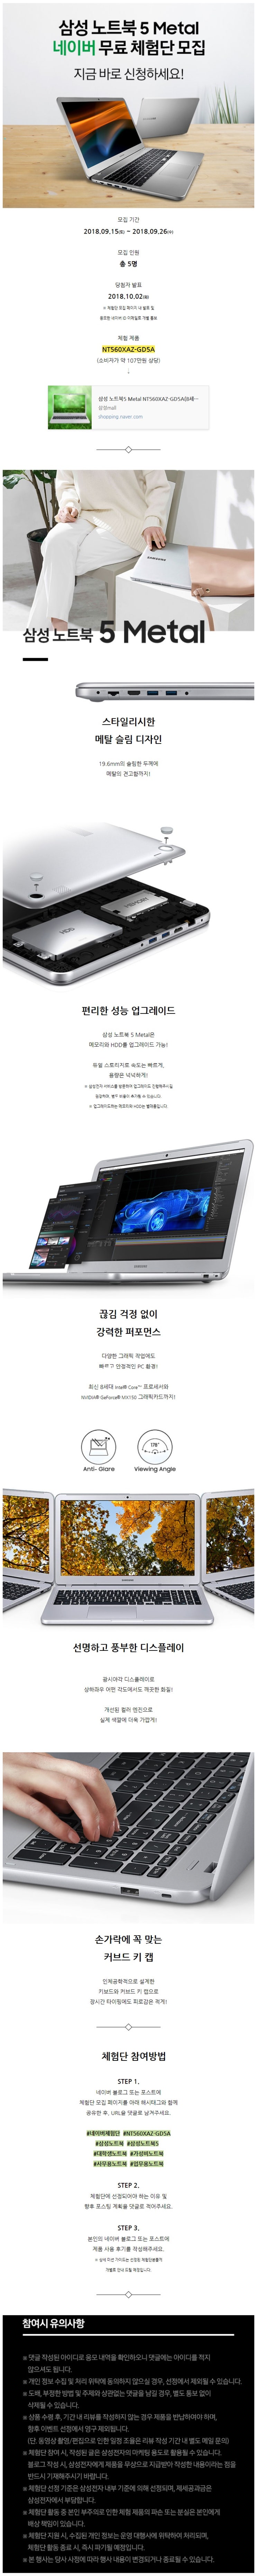 삼성 노트북 5 Metal 무료 체험단 모집